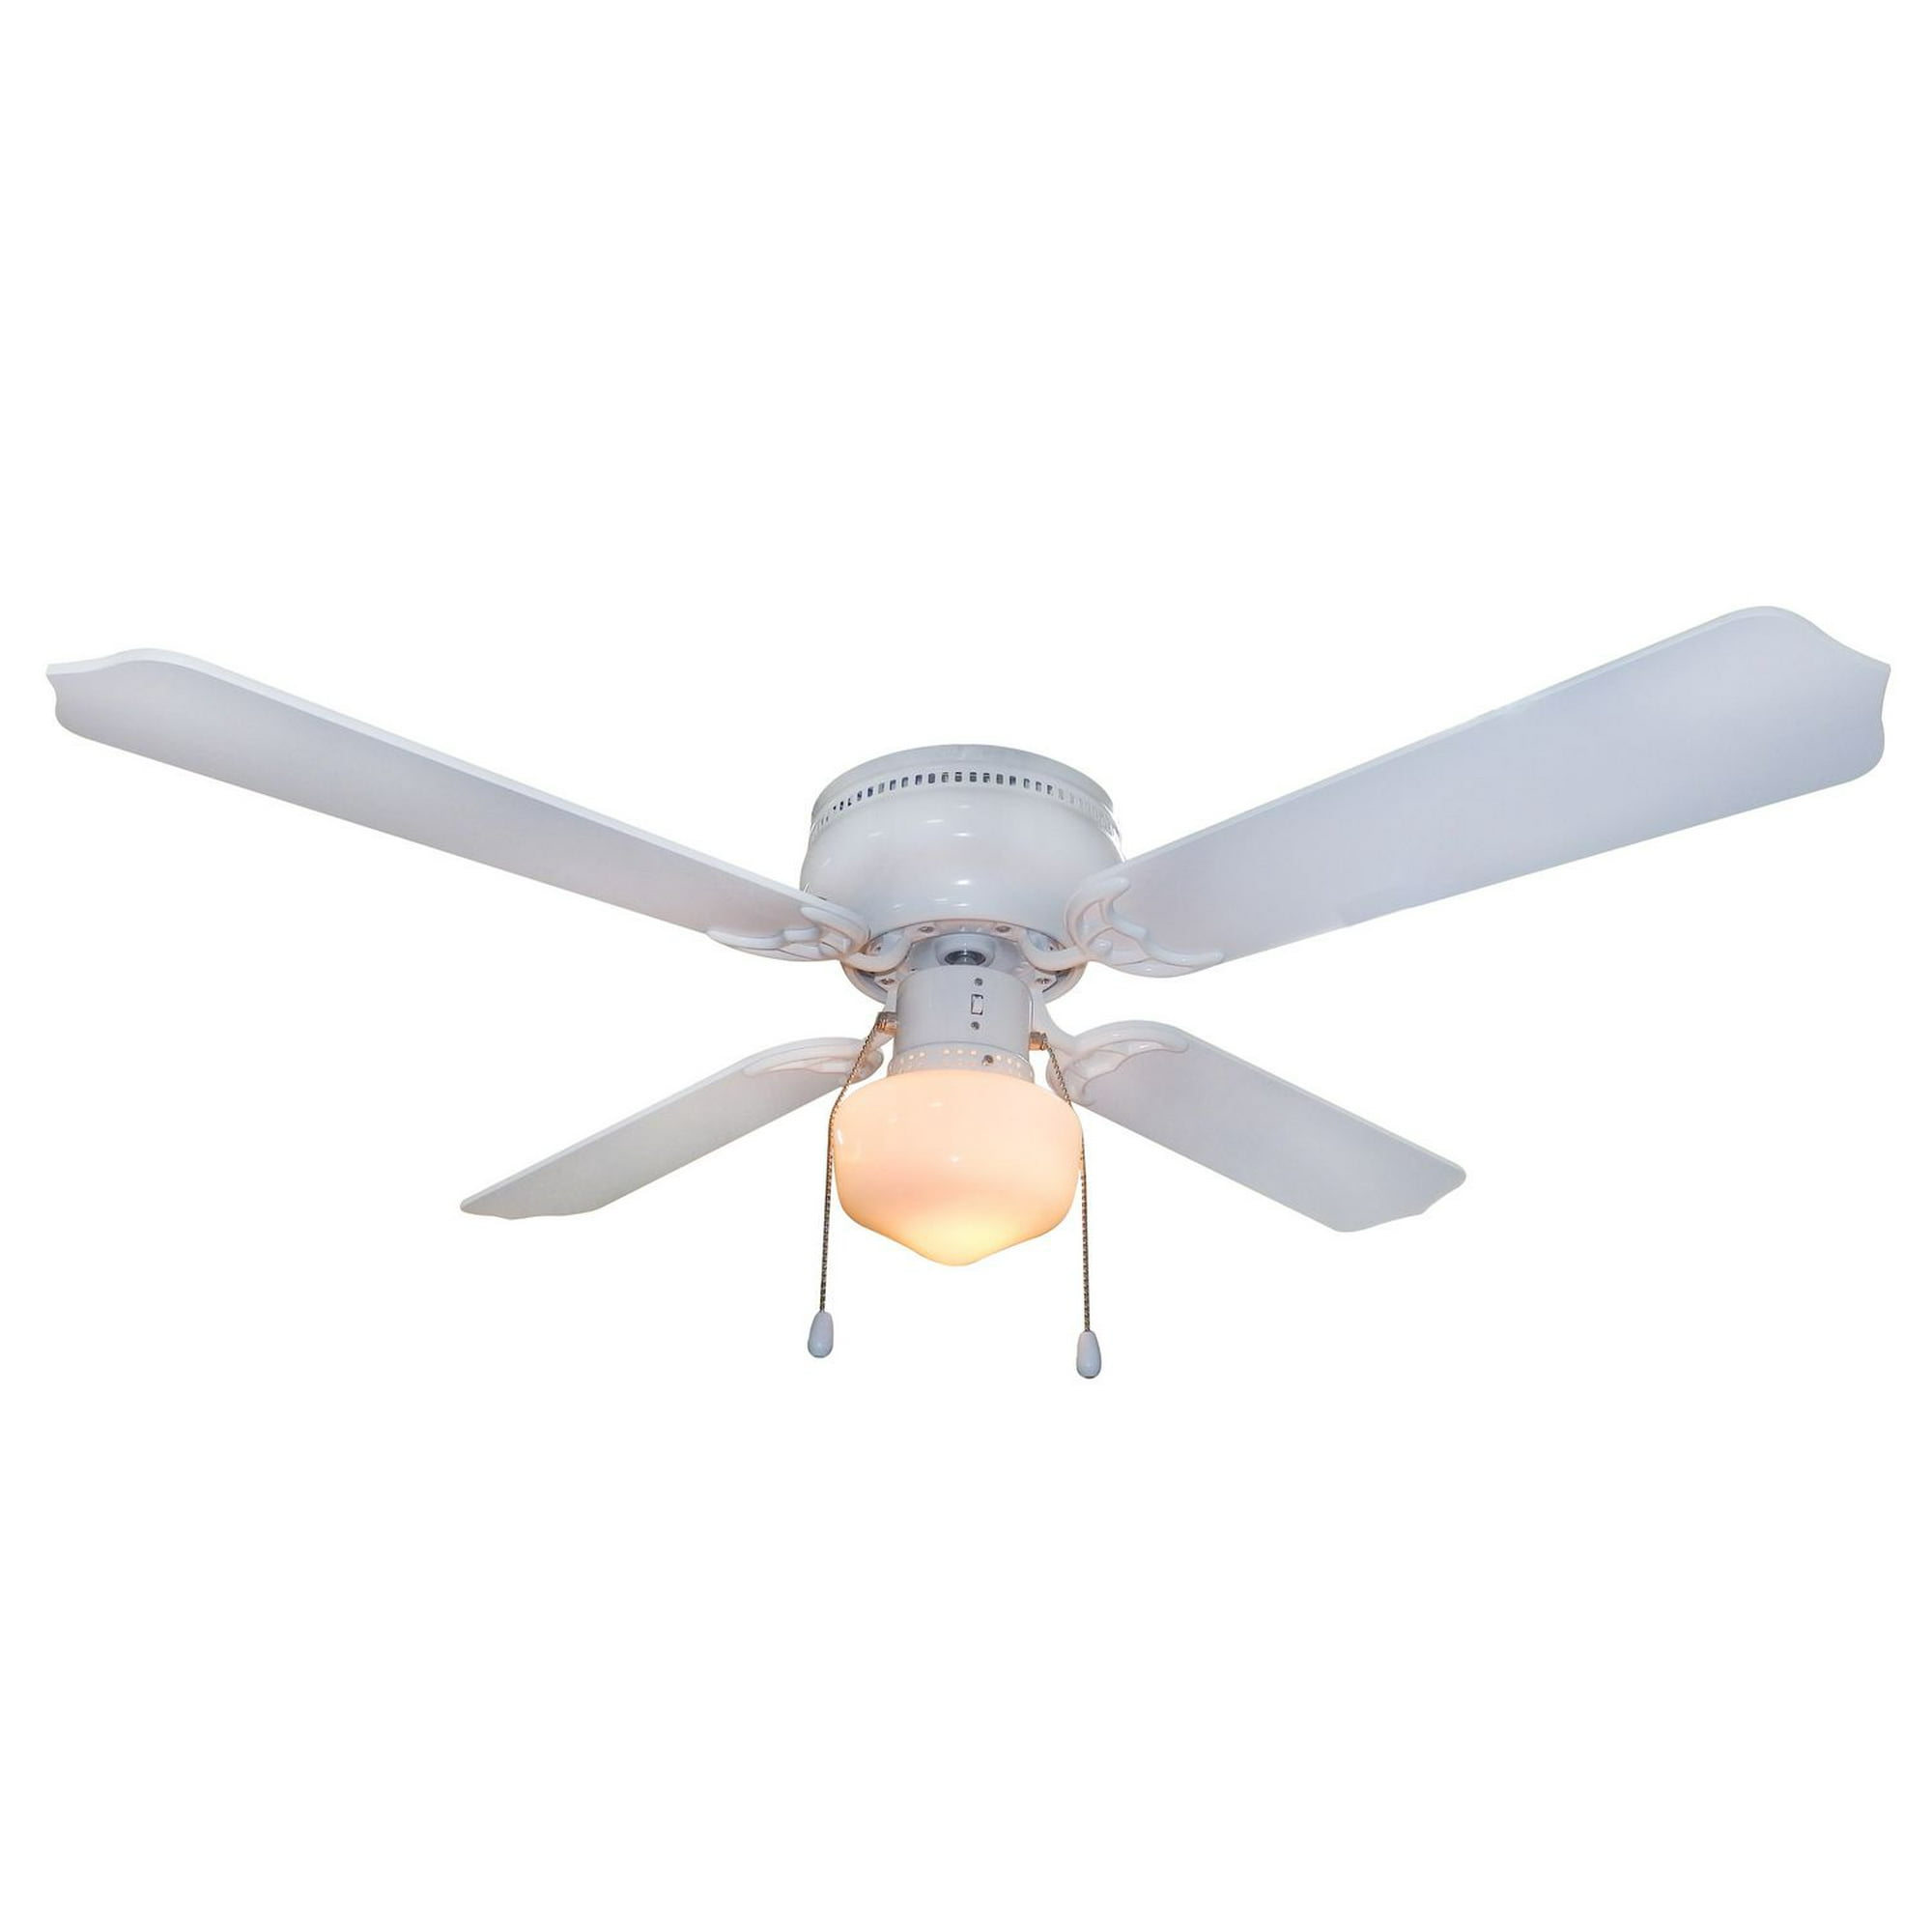 Home Trends 42 Single Light White Flushmount Ceiling Fan 